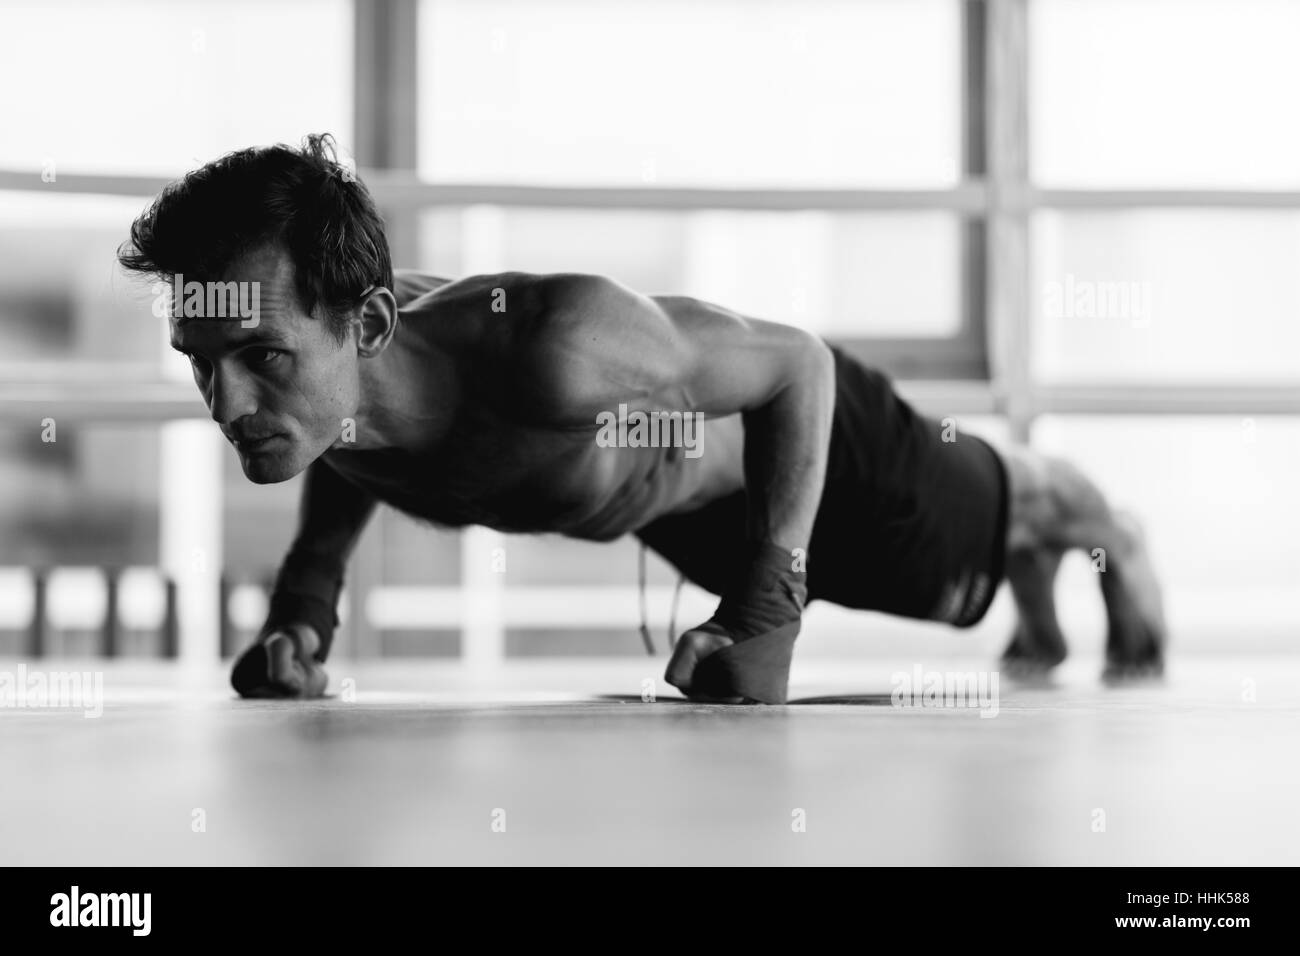 Photo of athlete performs exercises Stock Photo